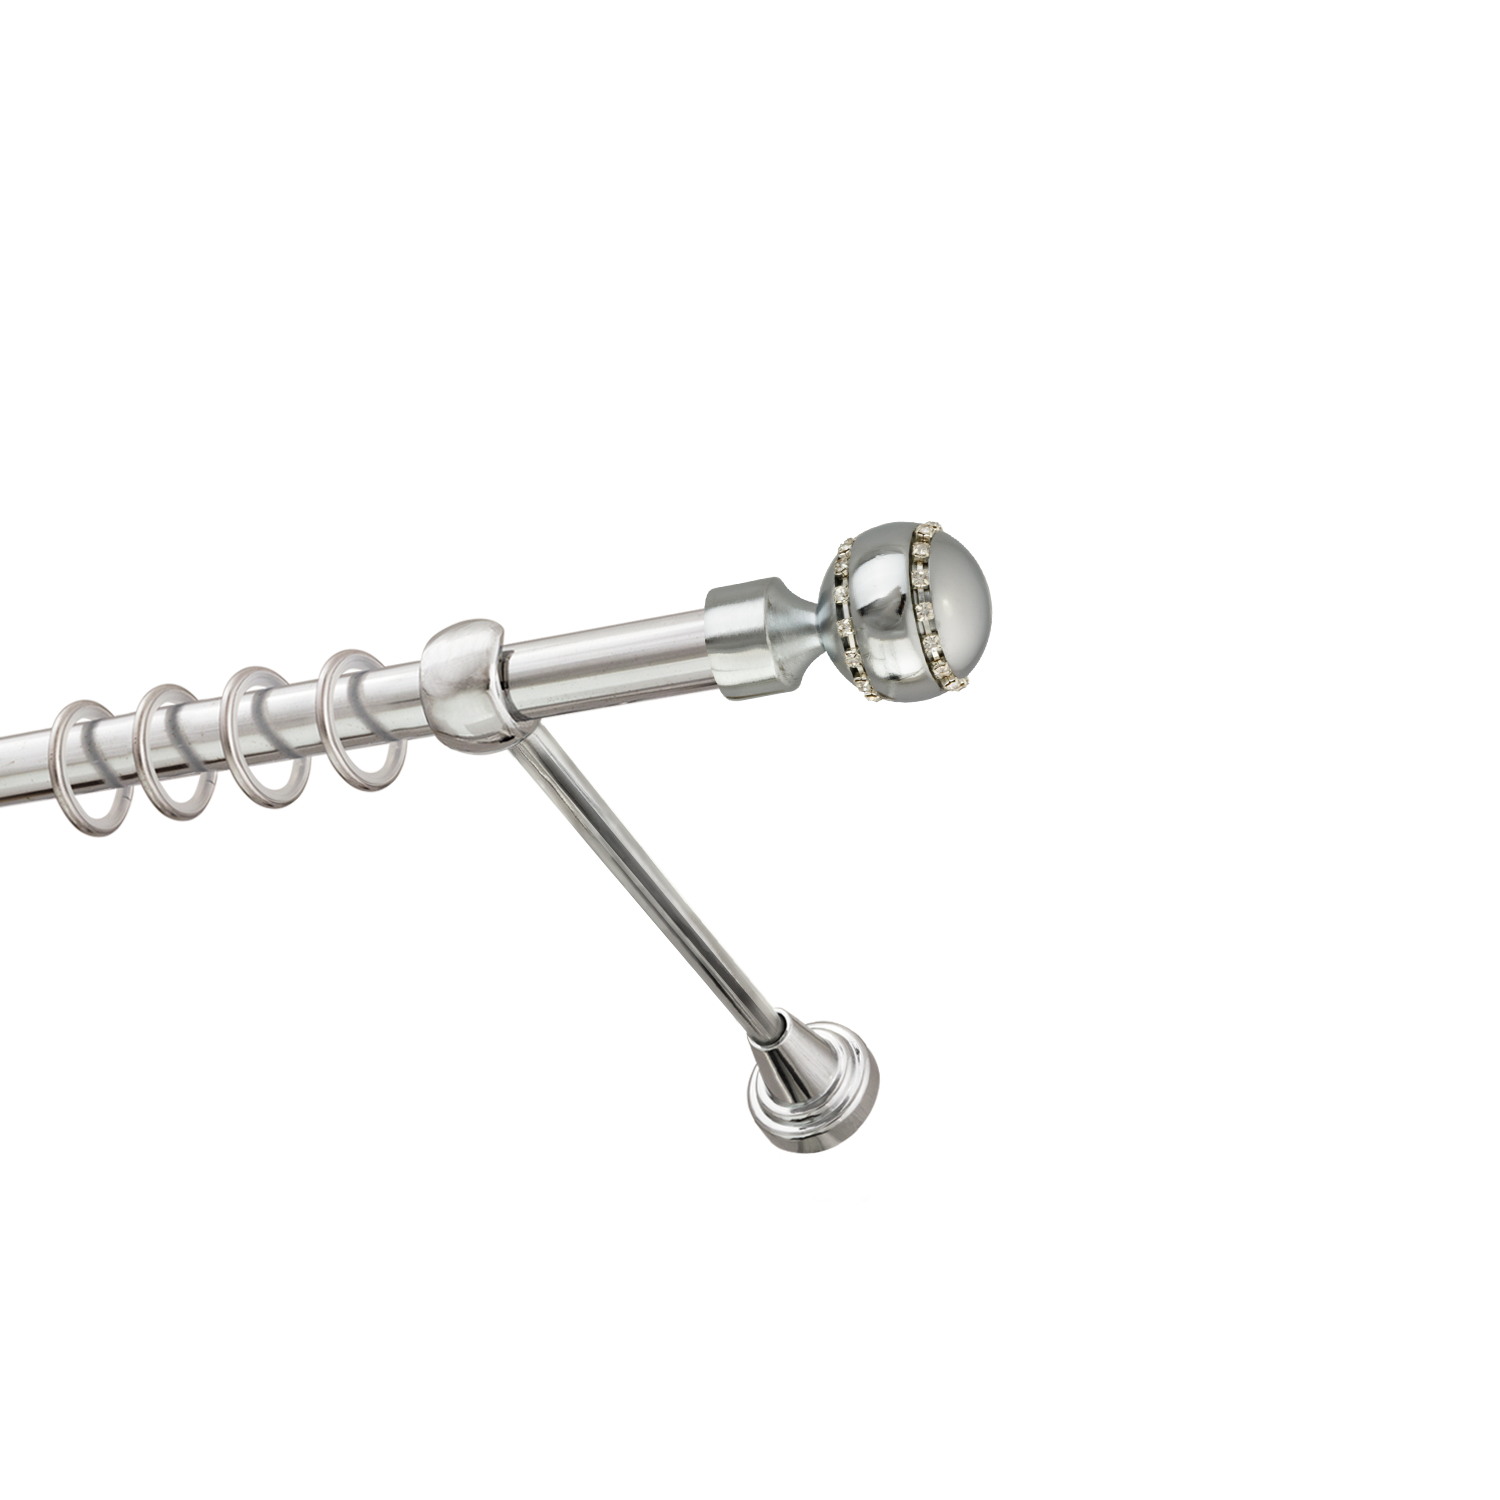 Металлический карниз для штор Модерн, однорядный 16 мм, серебро, гладкая штанга, длина 240 см - фото Wikidecor.ru